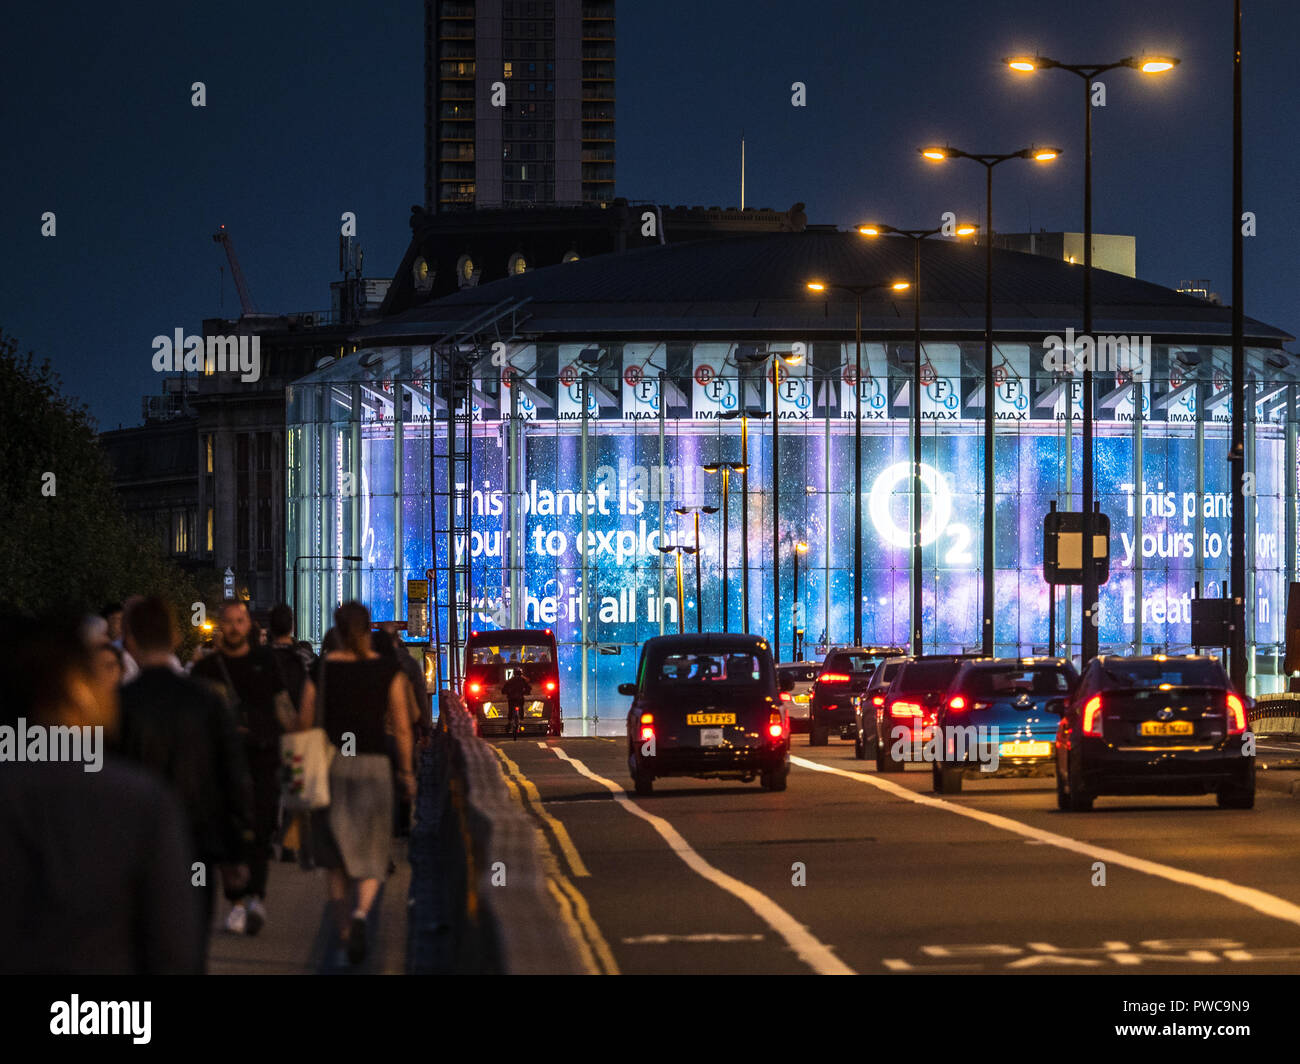 BFI Southbank de Londres cine IMAX en Waterloo Bridge, diseñado por Avery Associates Architects completado en mayo de 1999. Operado por Odeon Cinemas. Foto de stock